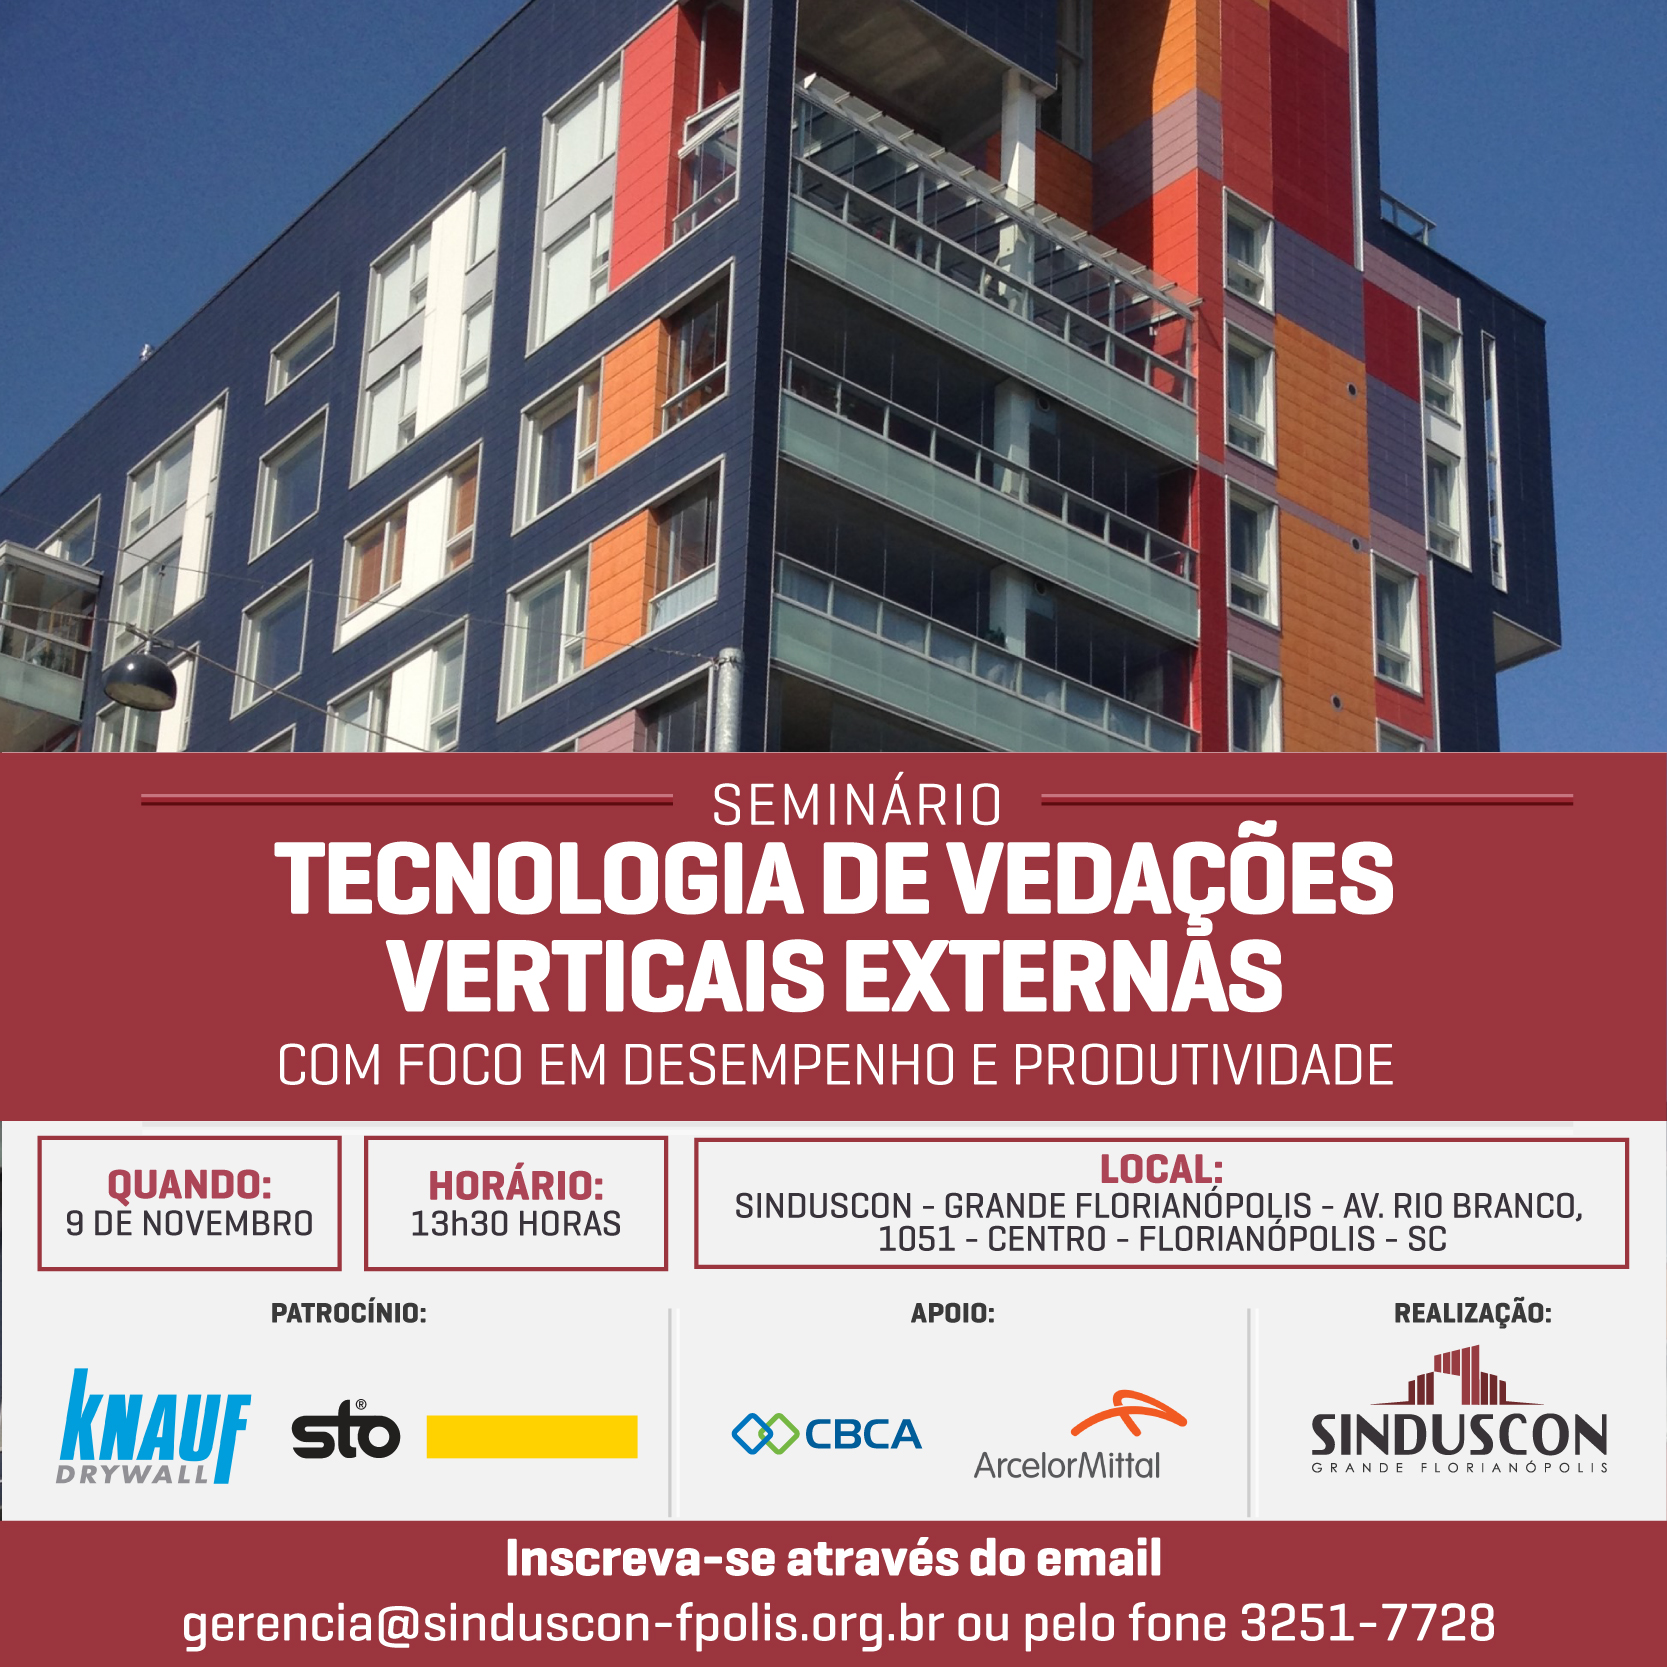 Seminário: Tecnologia de vedações verticais externas